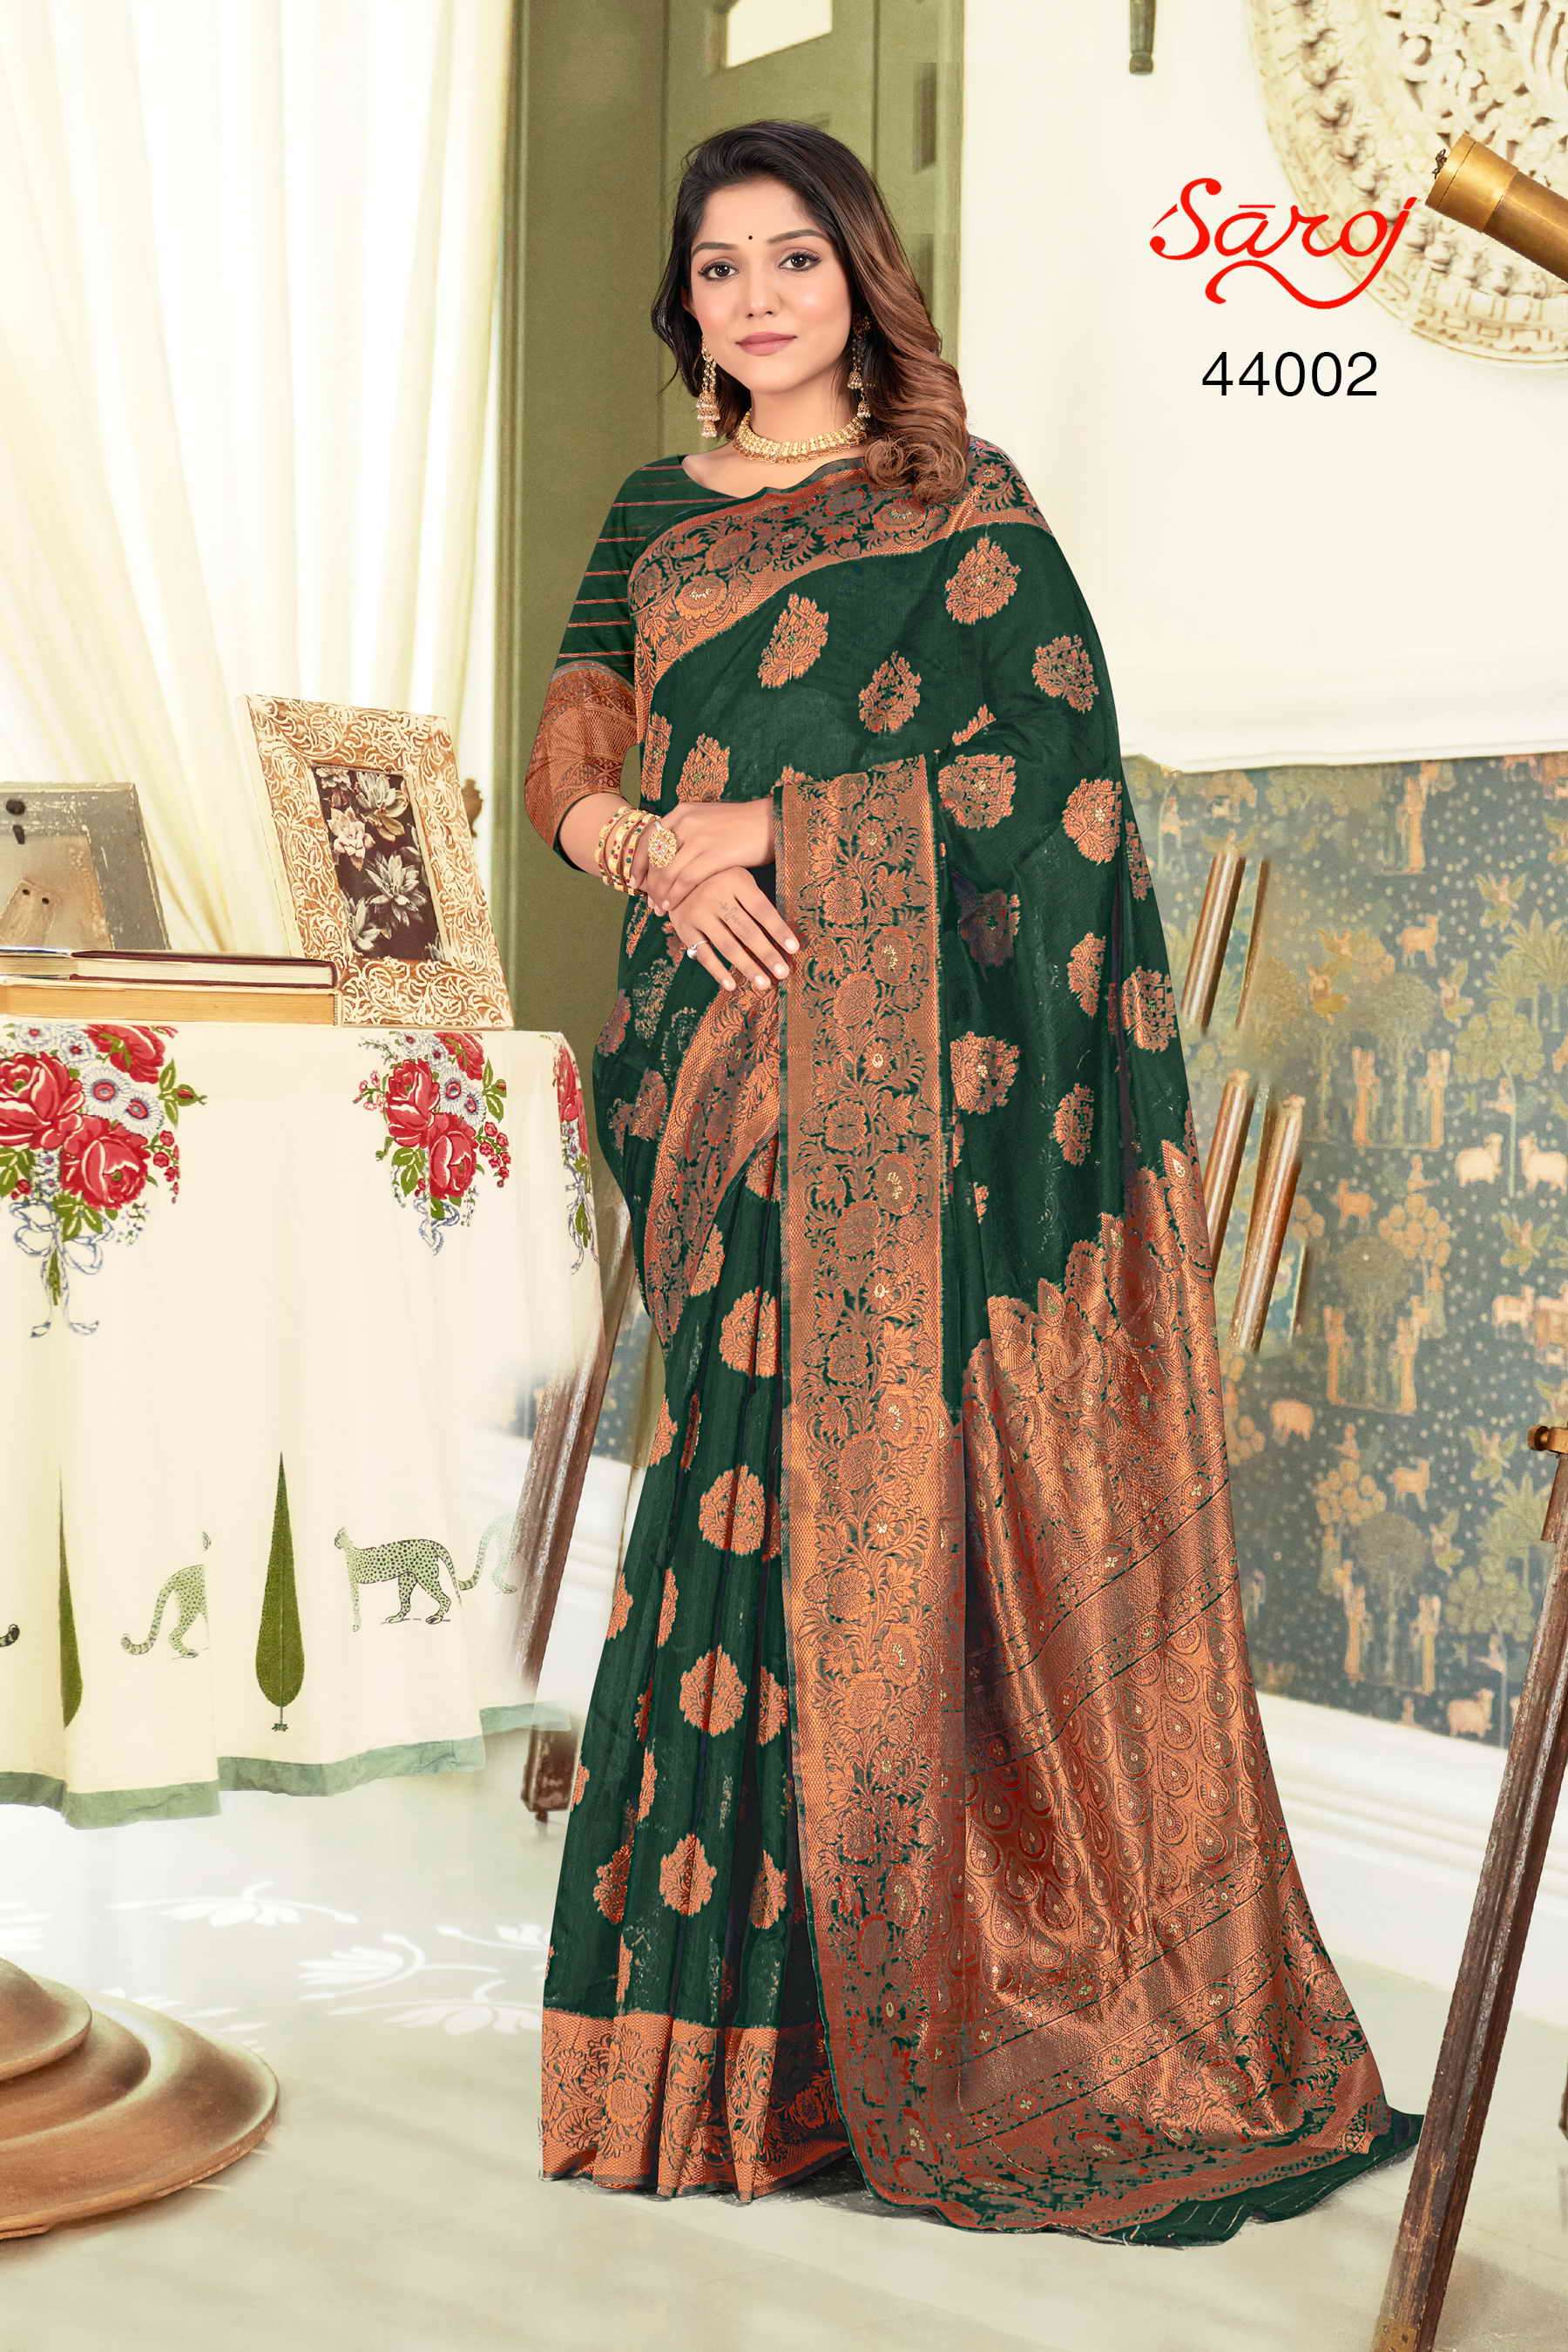 Saroj textile presents Swaroopa vol 3 Designer sarees catalogue